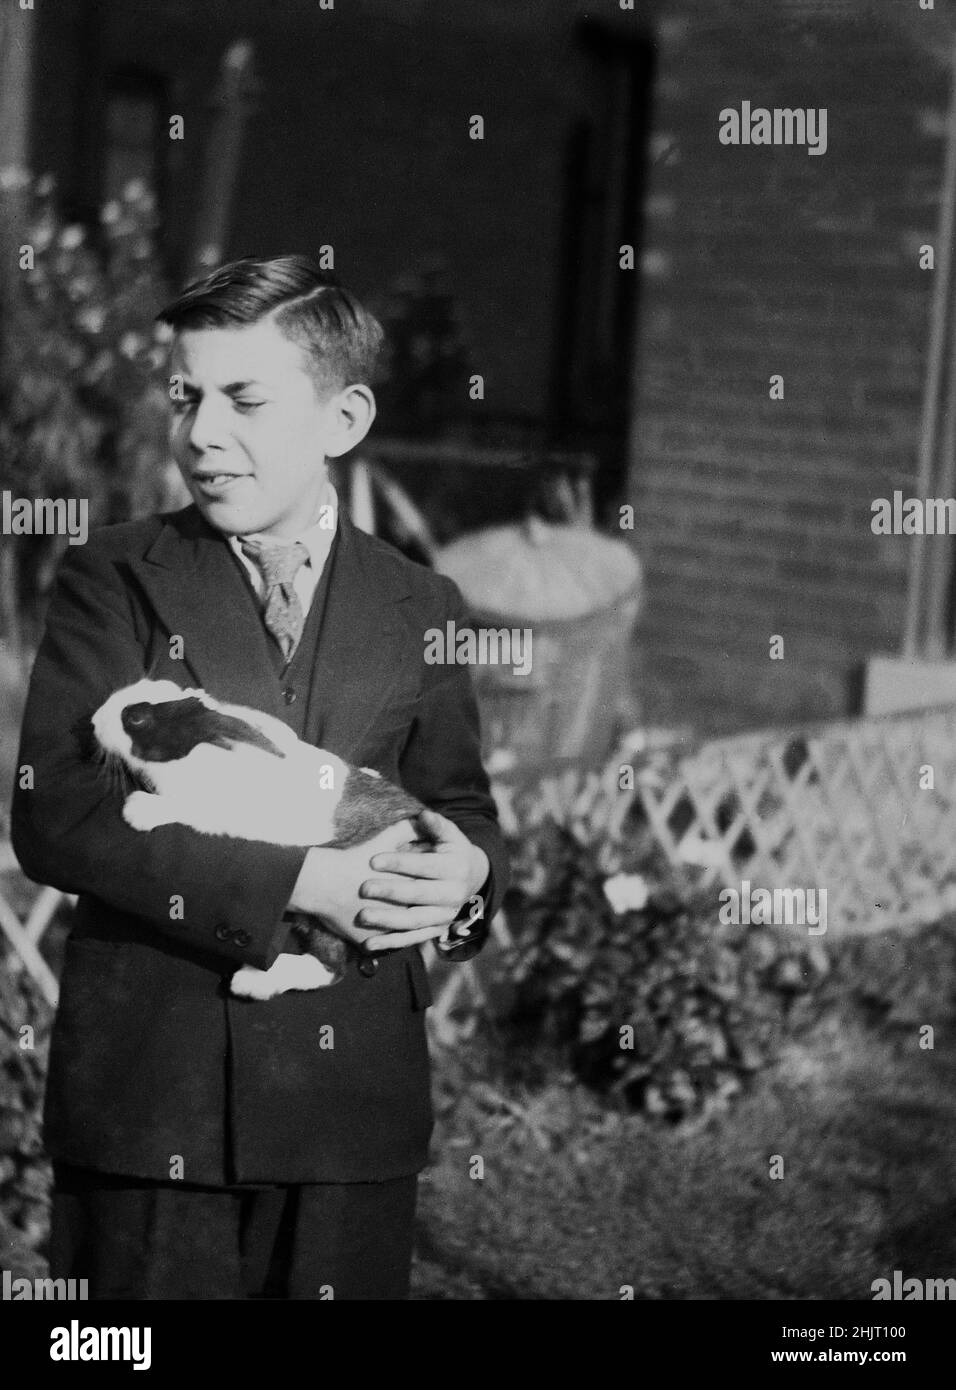 1940s, historisch, ein Teenager-Junge in doppelreihiger Anzugkleidung, der draußen mit seinem Meerschweinchen stand, Dudley, Warwick, England, Großbritannien. Ursprünglich aus Südamerika wurden Guinea-Schweine nach Europa gebracht und sind seit dem 1800s beliebte Haustiere. Stockfoto